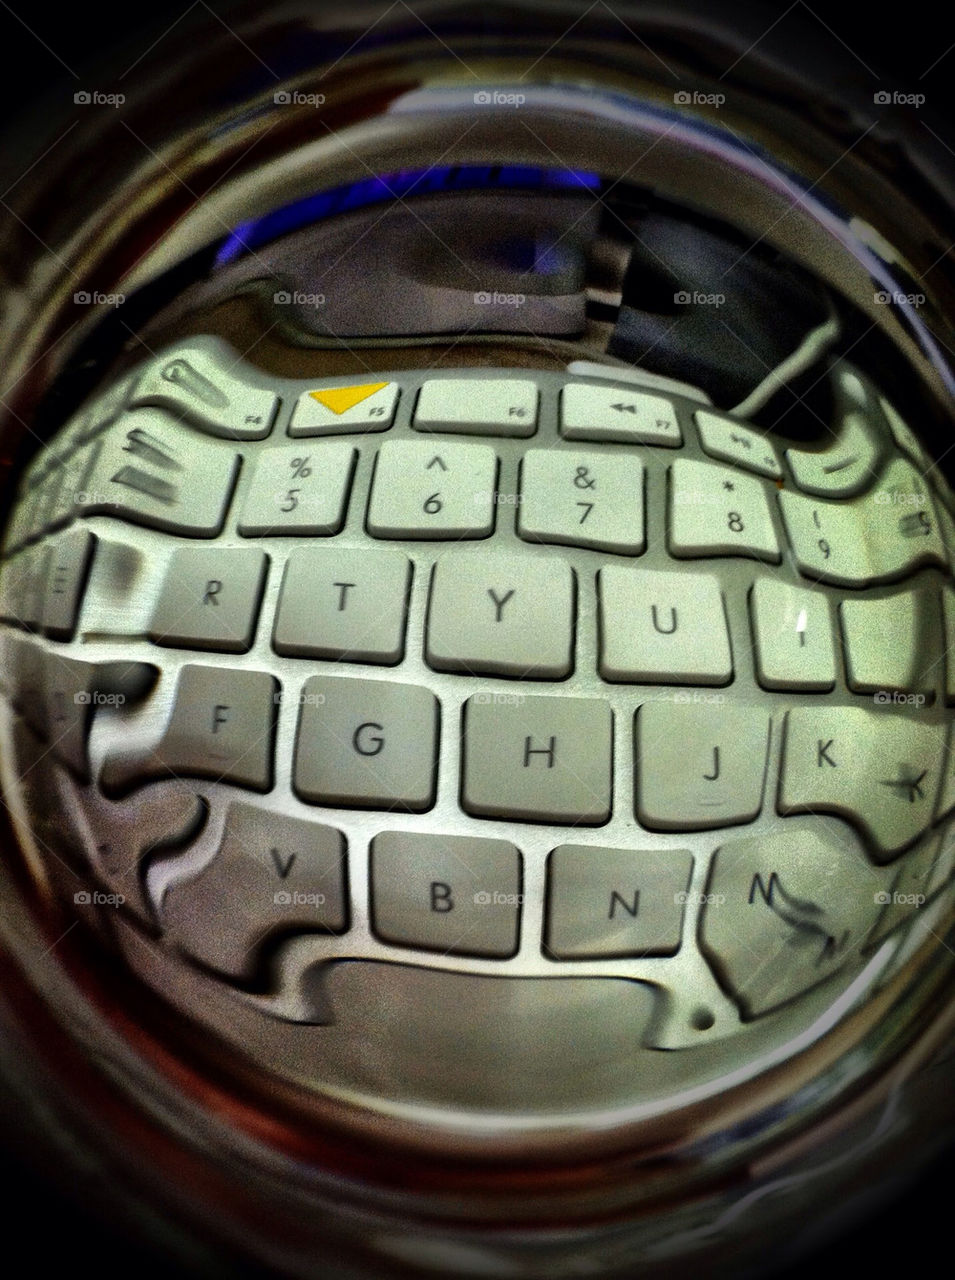 glass apple metal keyboard by wmm1969